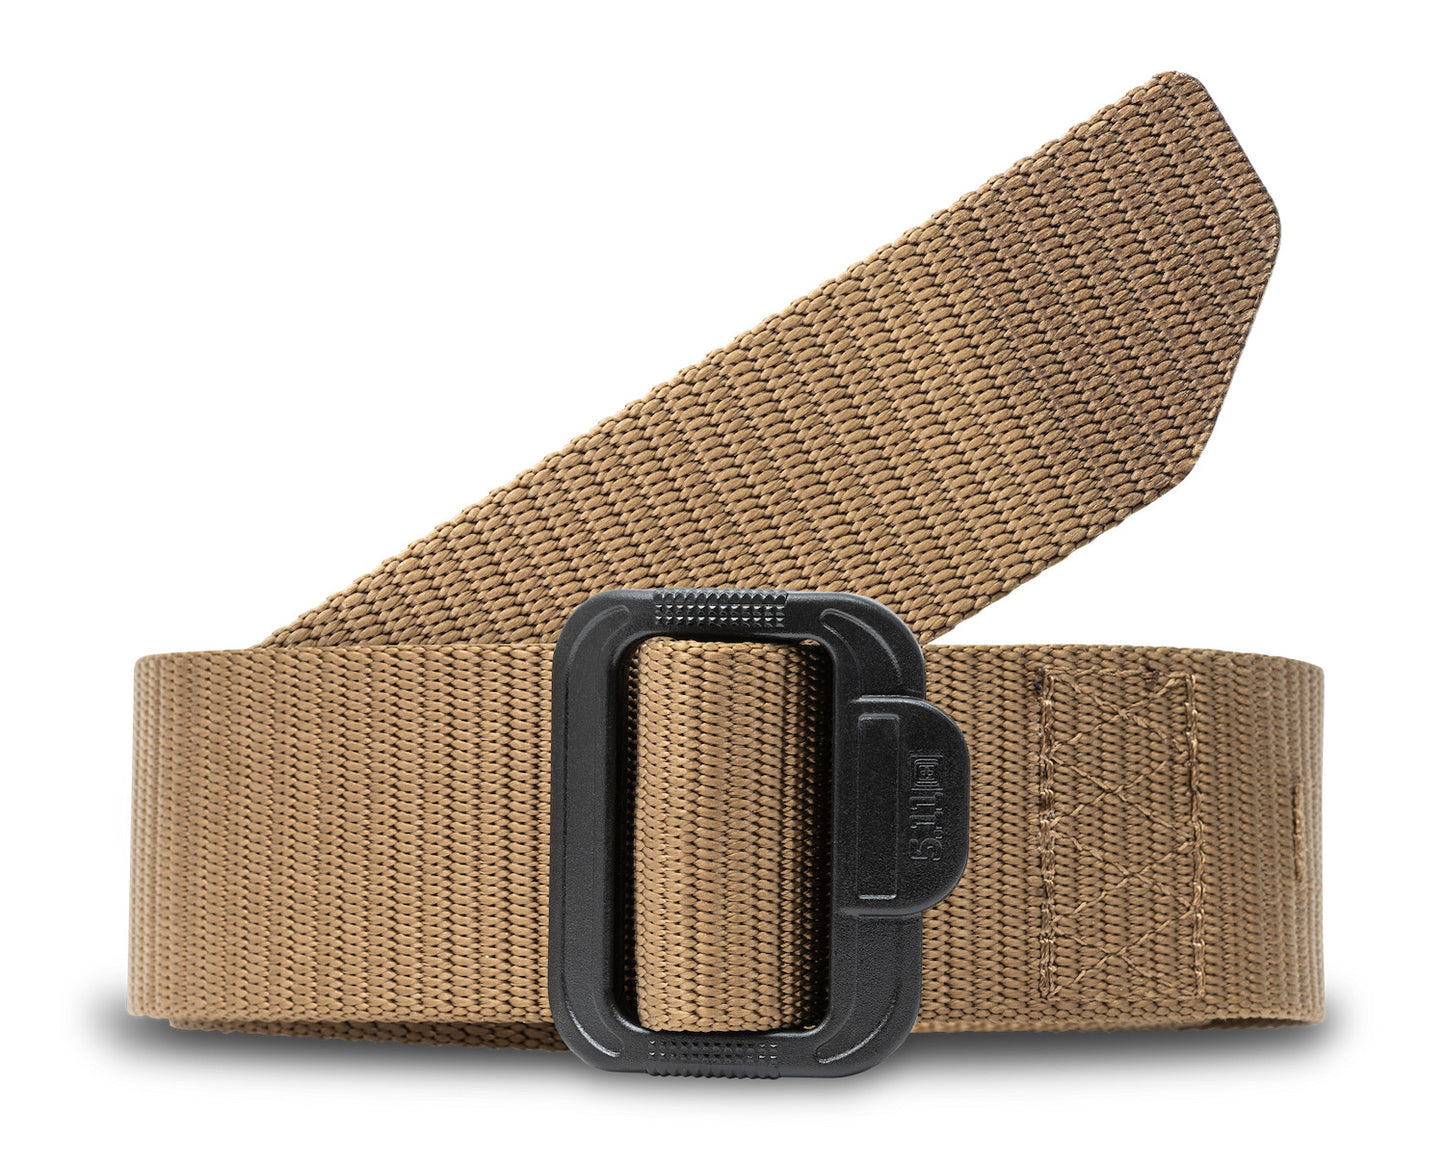 TDU 1 3/4 inch Belts